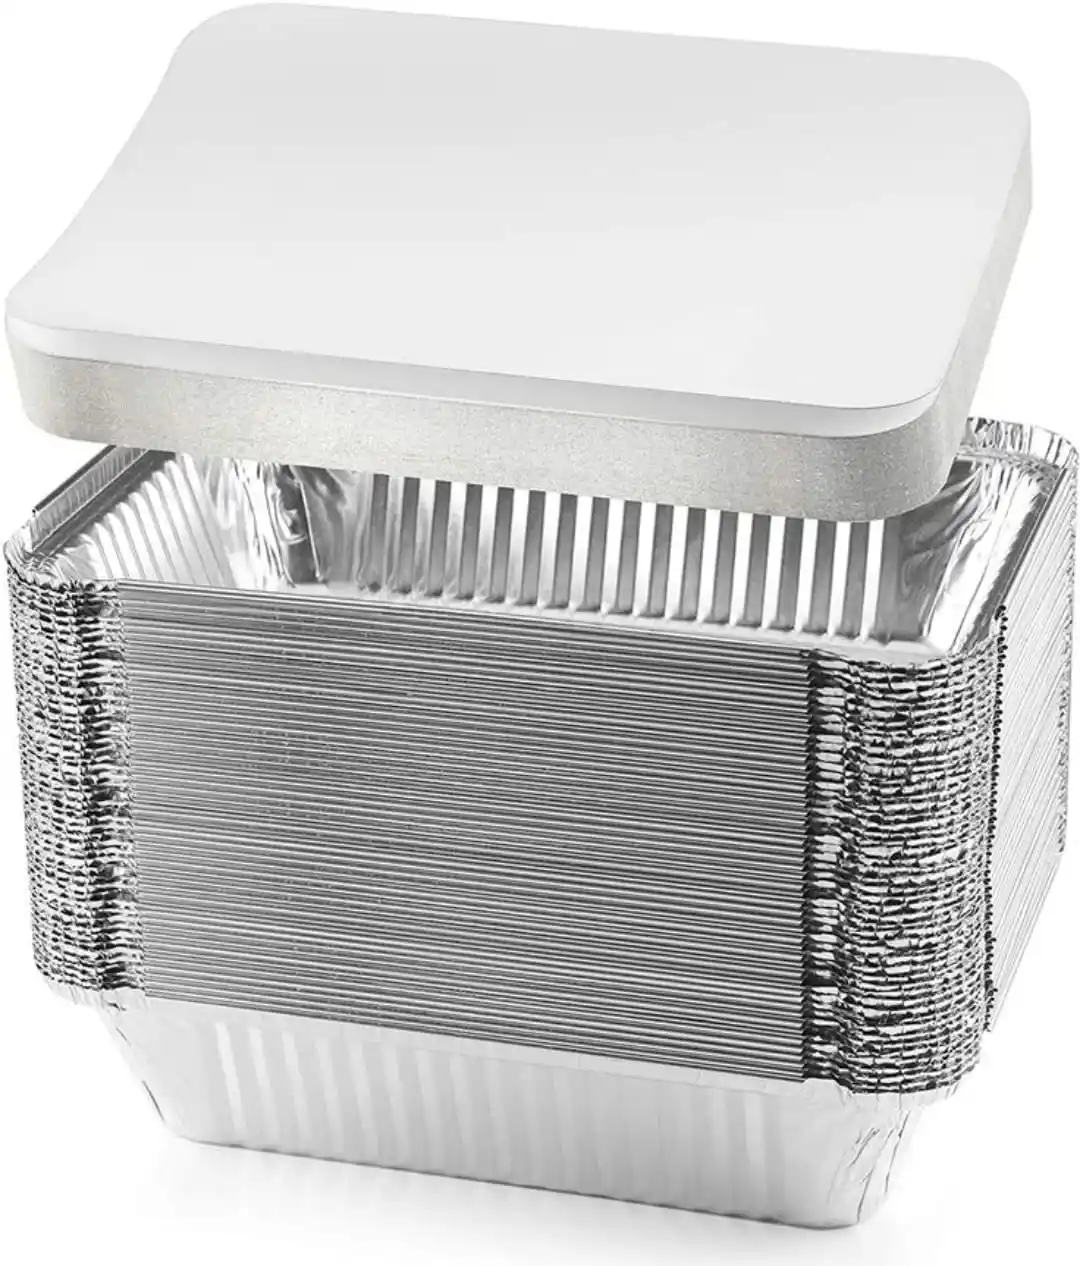 Assiette en feuille d'aluminium jetable avec couvercle/assiette en papier d'aluminium/assiette en feuille d'aluminium en gros Assiette en feuille d'aluminium jetable